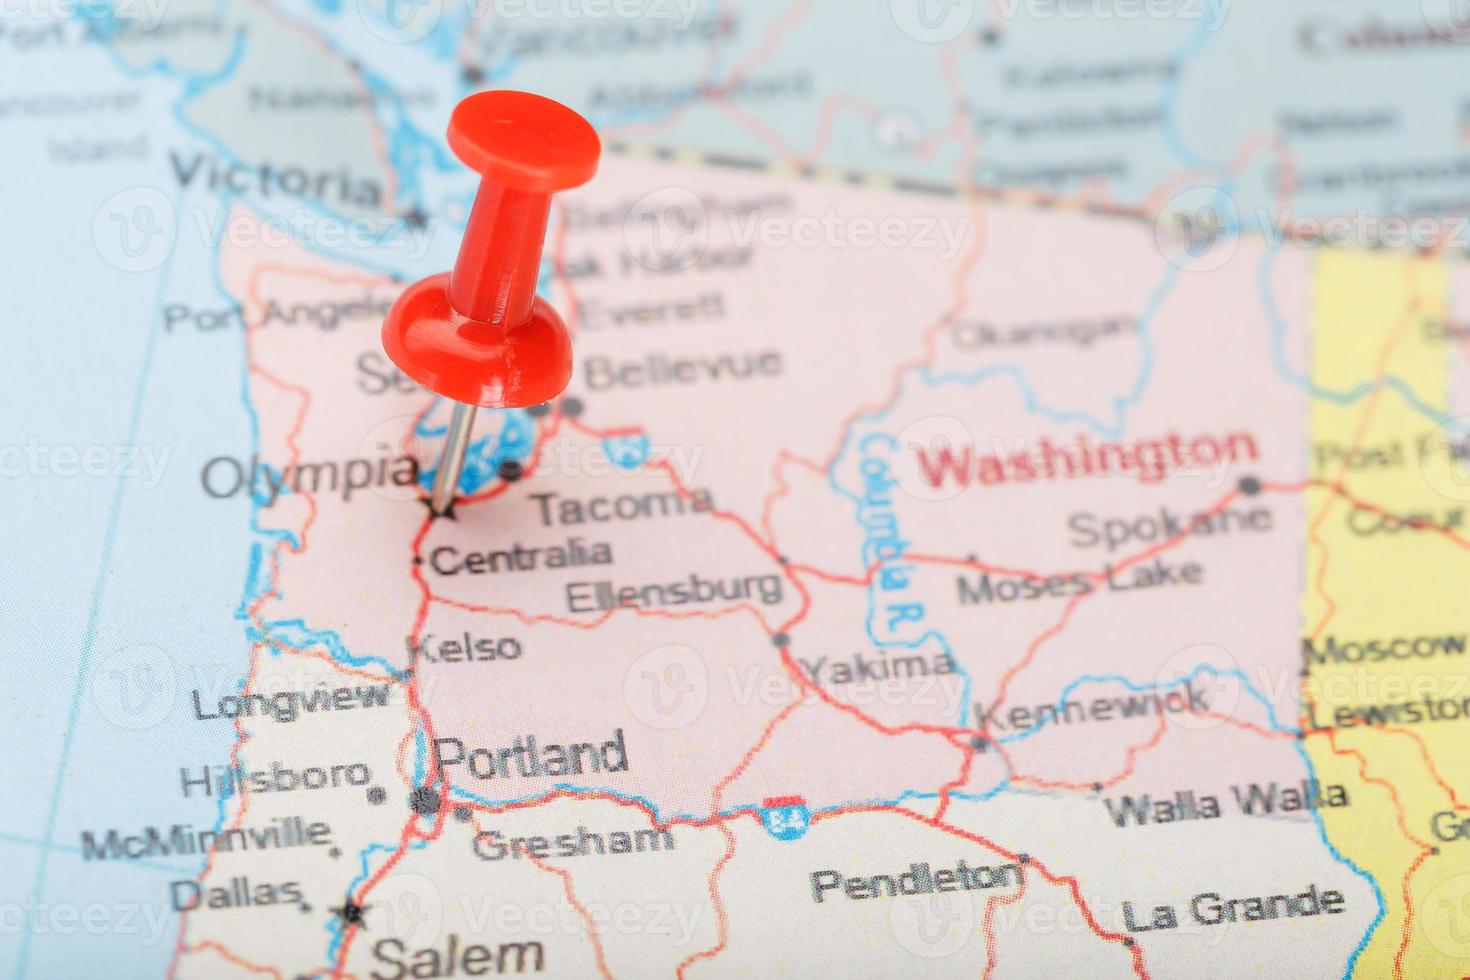 aiguille de bureau rouge sur la carte des états-unis, washington et dc. Close up plan de Washington avec tack rouge photo